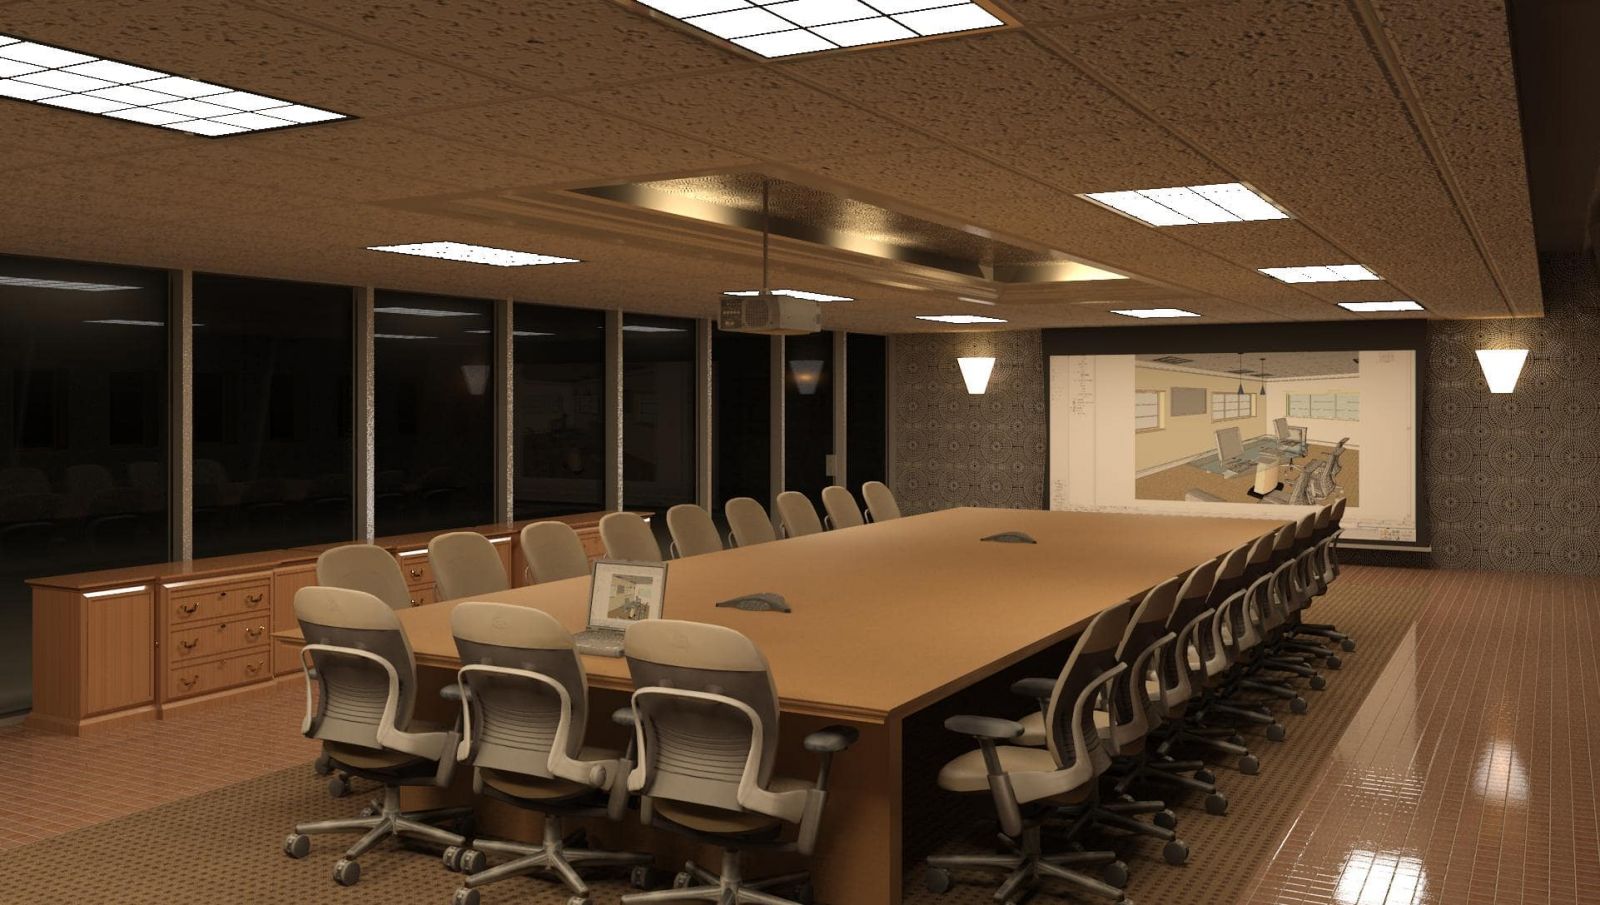 20 Mẫu thiết kế nội thất phòng họp đẹp hiện đại chuyên nghiệp